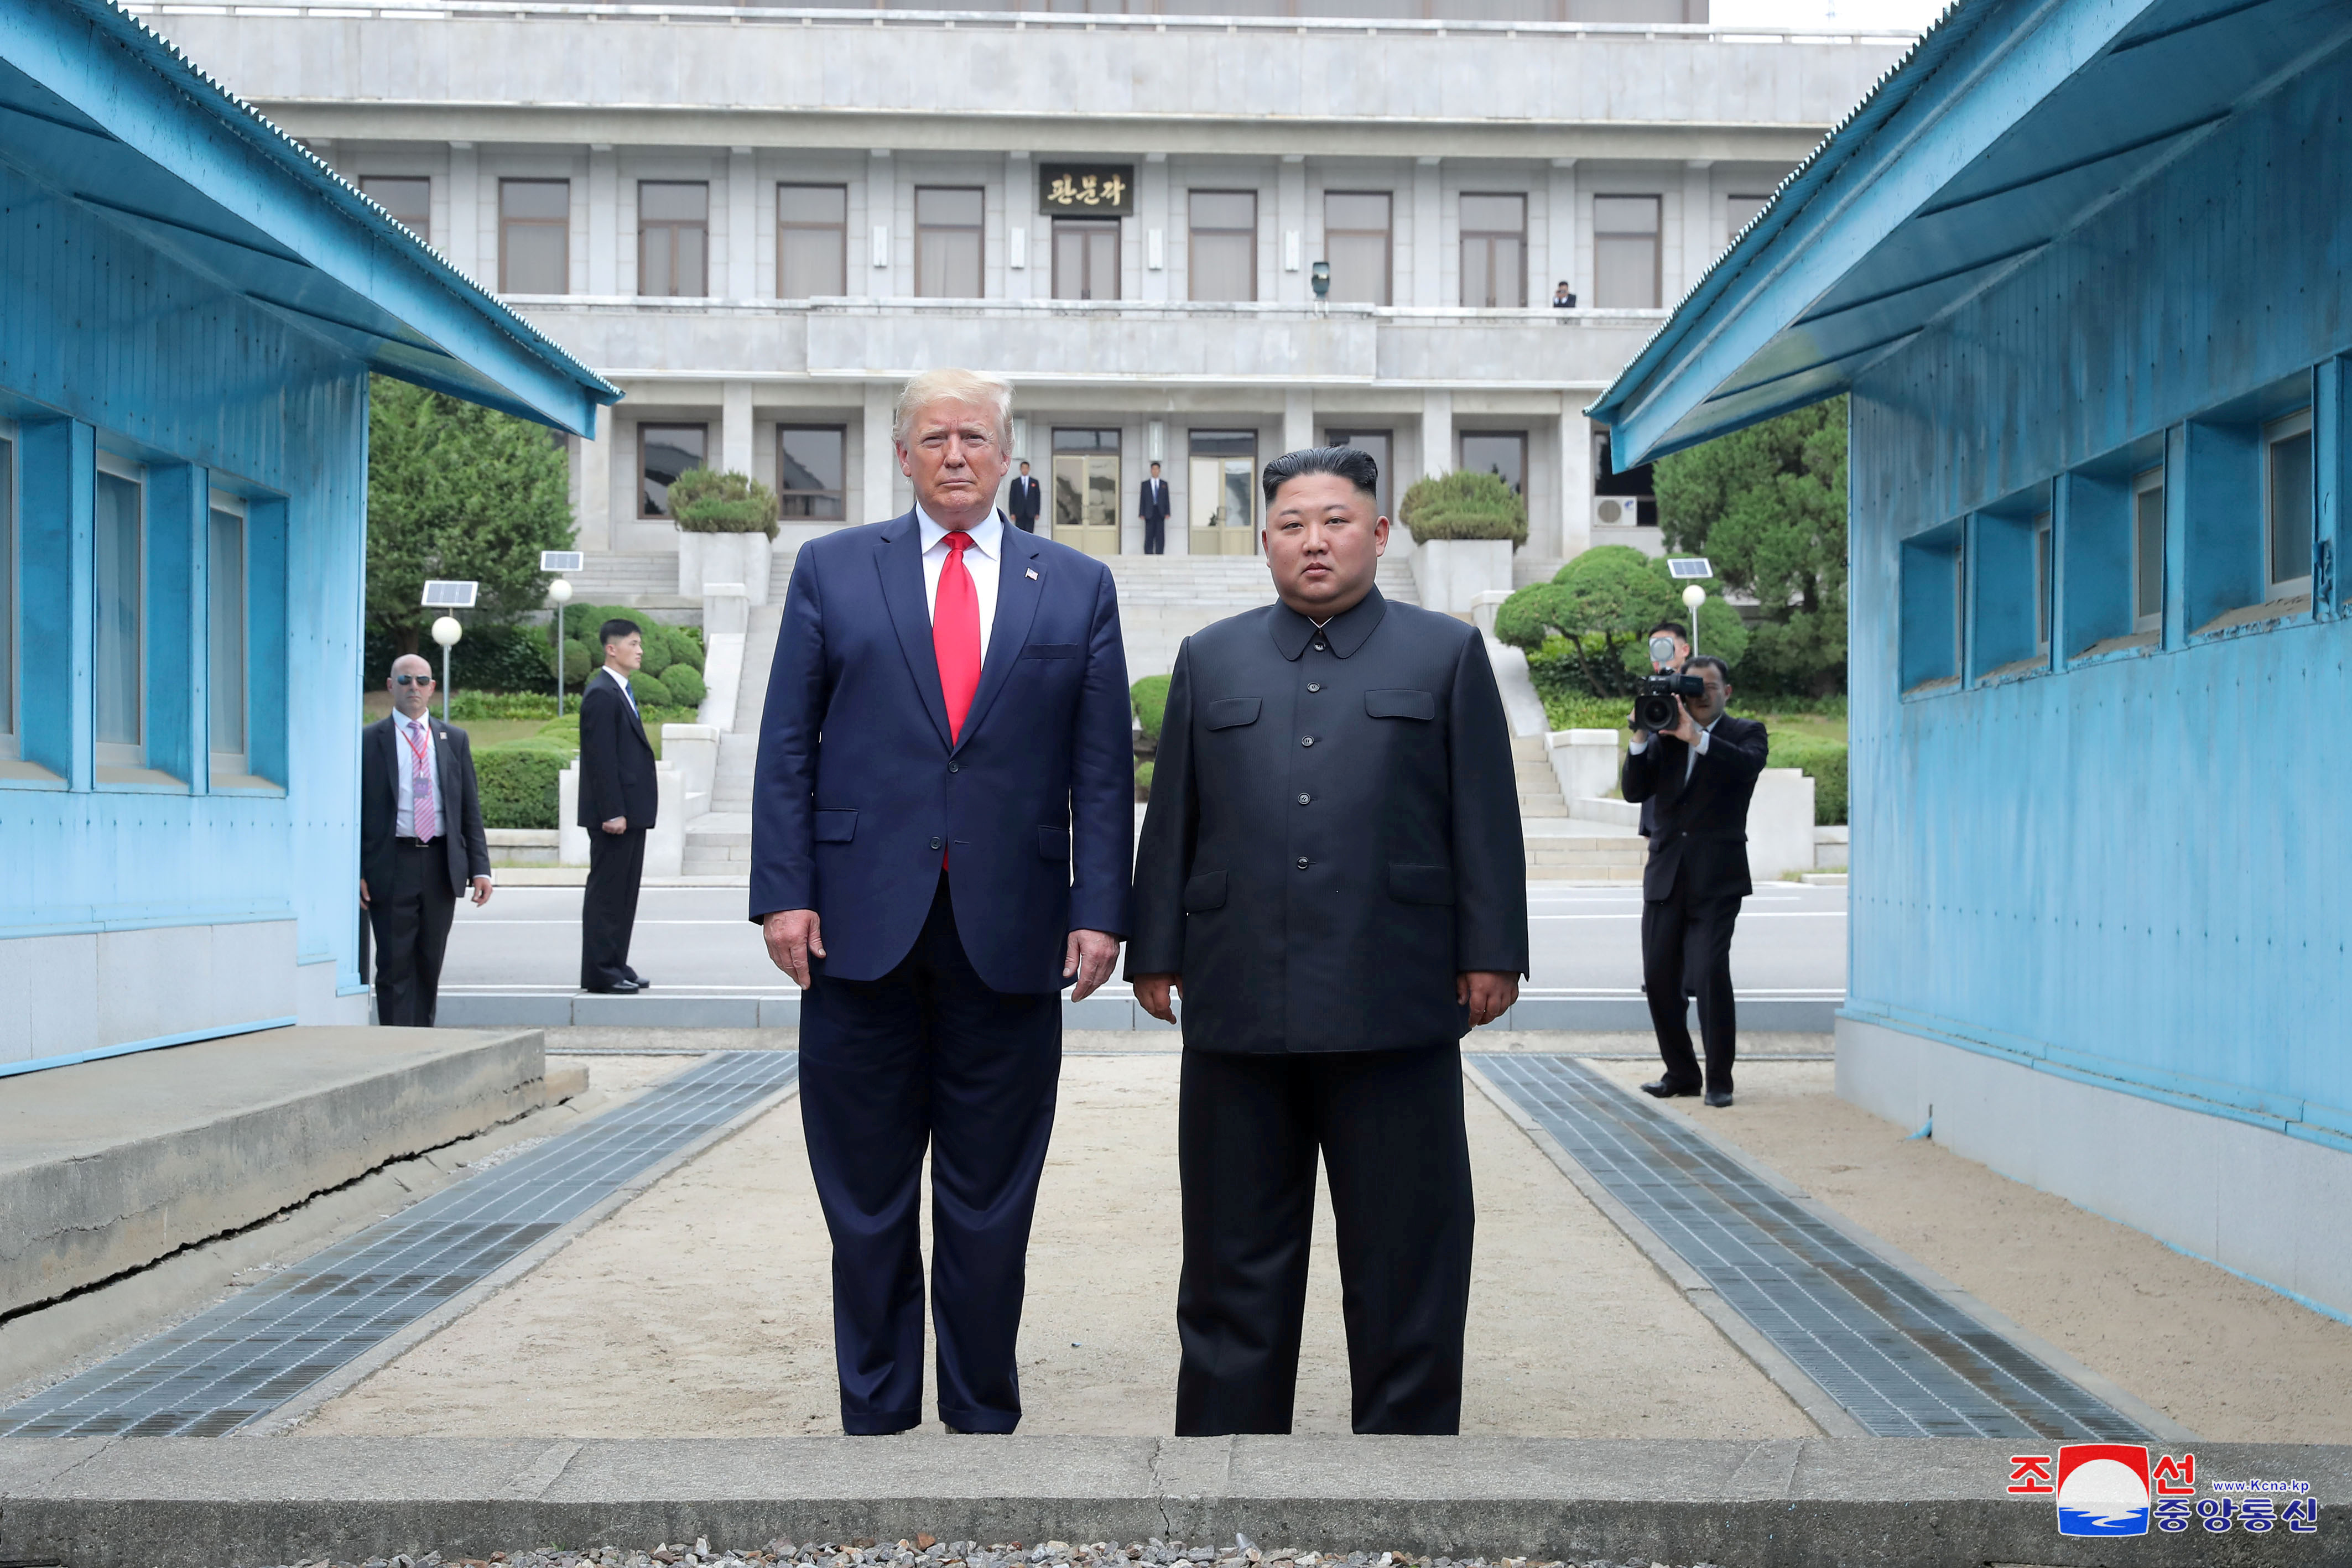 El presidente de Estados Unidos, Donald Trump, y el dictador norcoreano, Kim Jong Un, posan en una línea de demarcación militar en la zona desmilitarizada (DMZ) que separa las dos Coreas, en Panmunjom, Corea del Sur, el 30 de junio de 2019 (Reuters)